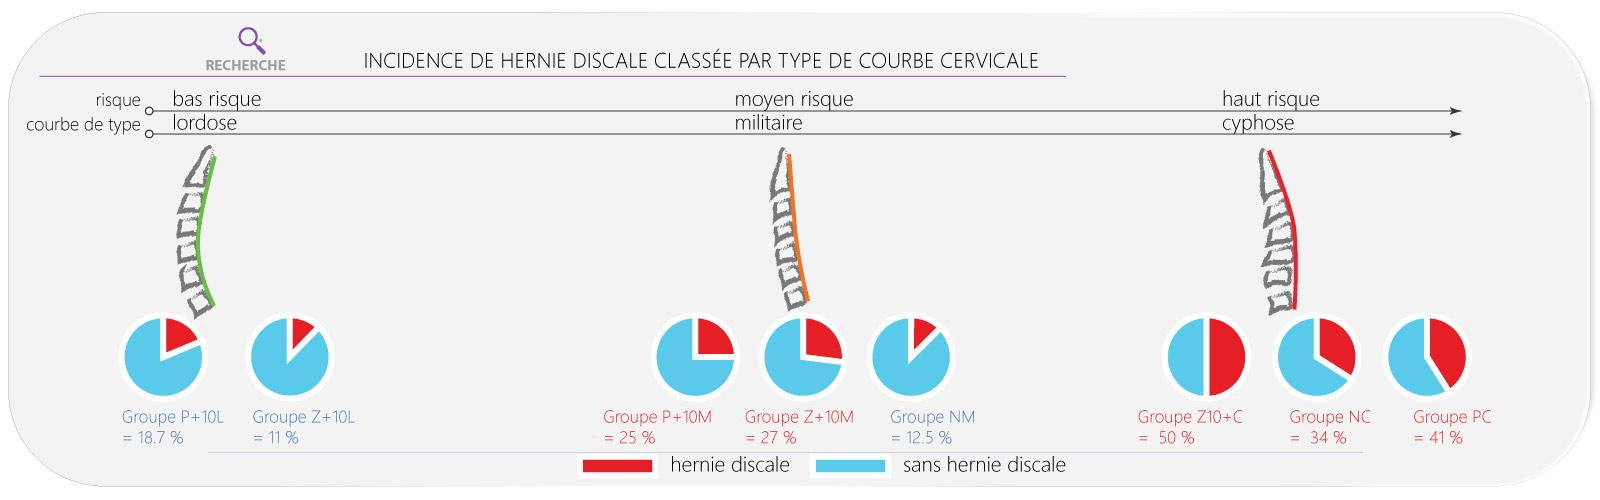 Incidence de hernie discale cervicale classée par type de courbe cervicale.